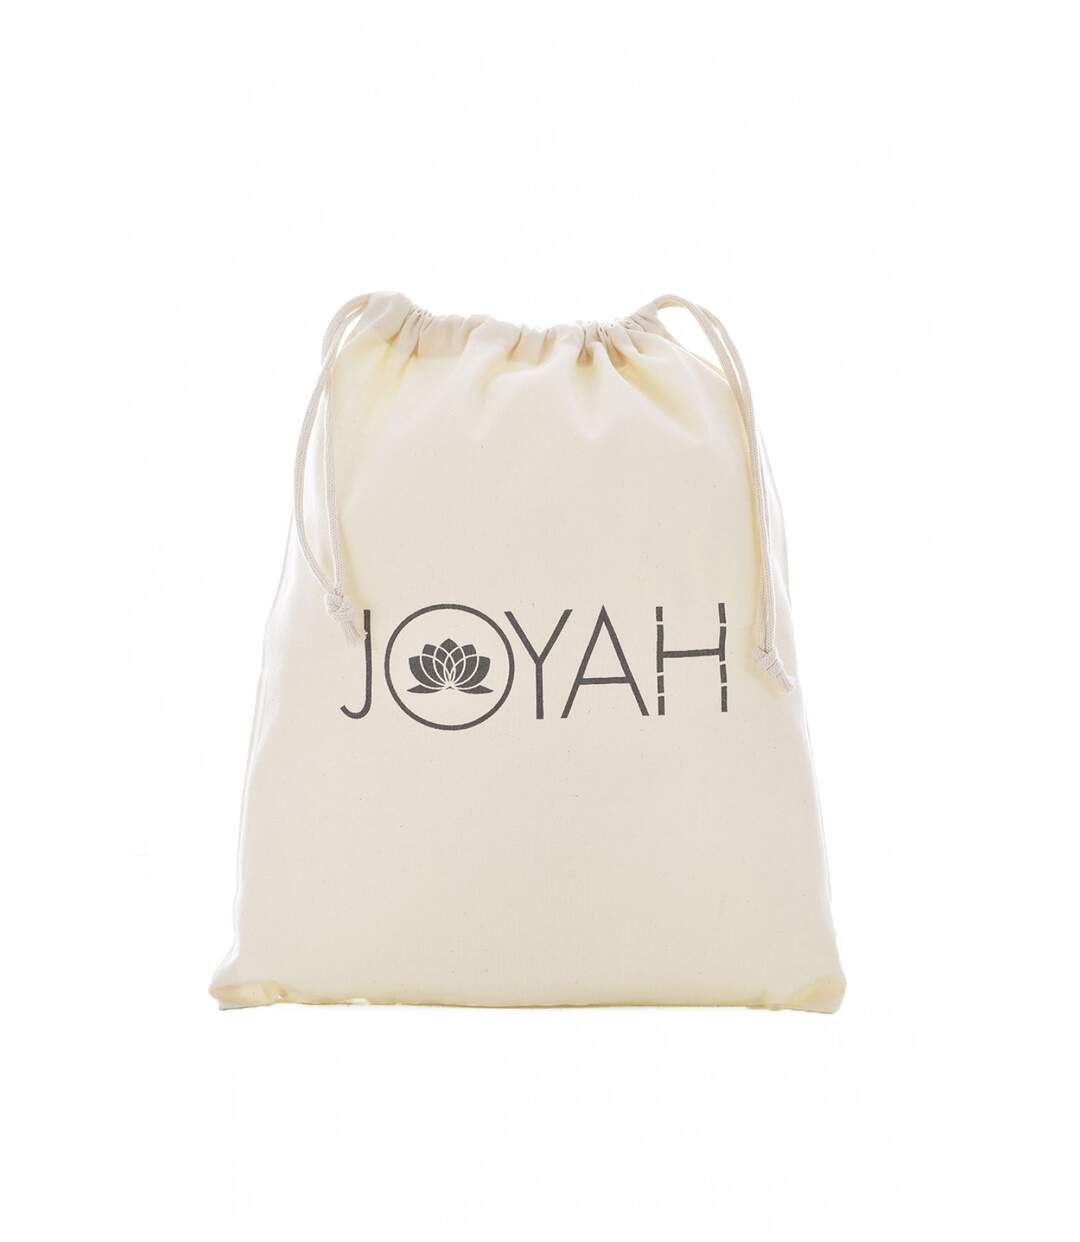 Tee shirt yoga en bambou printé chakras  -  Joyah - Homme